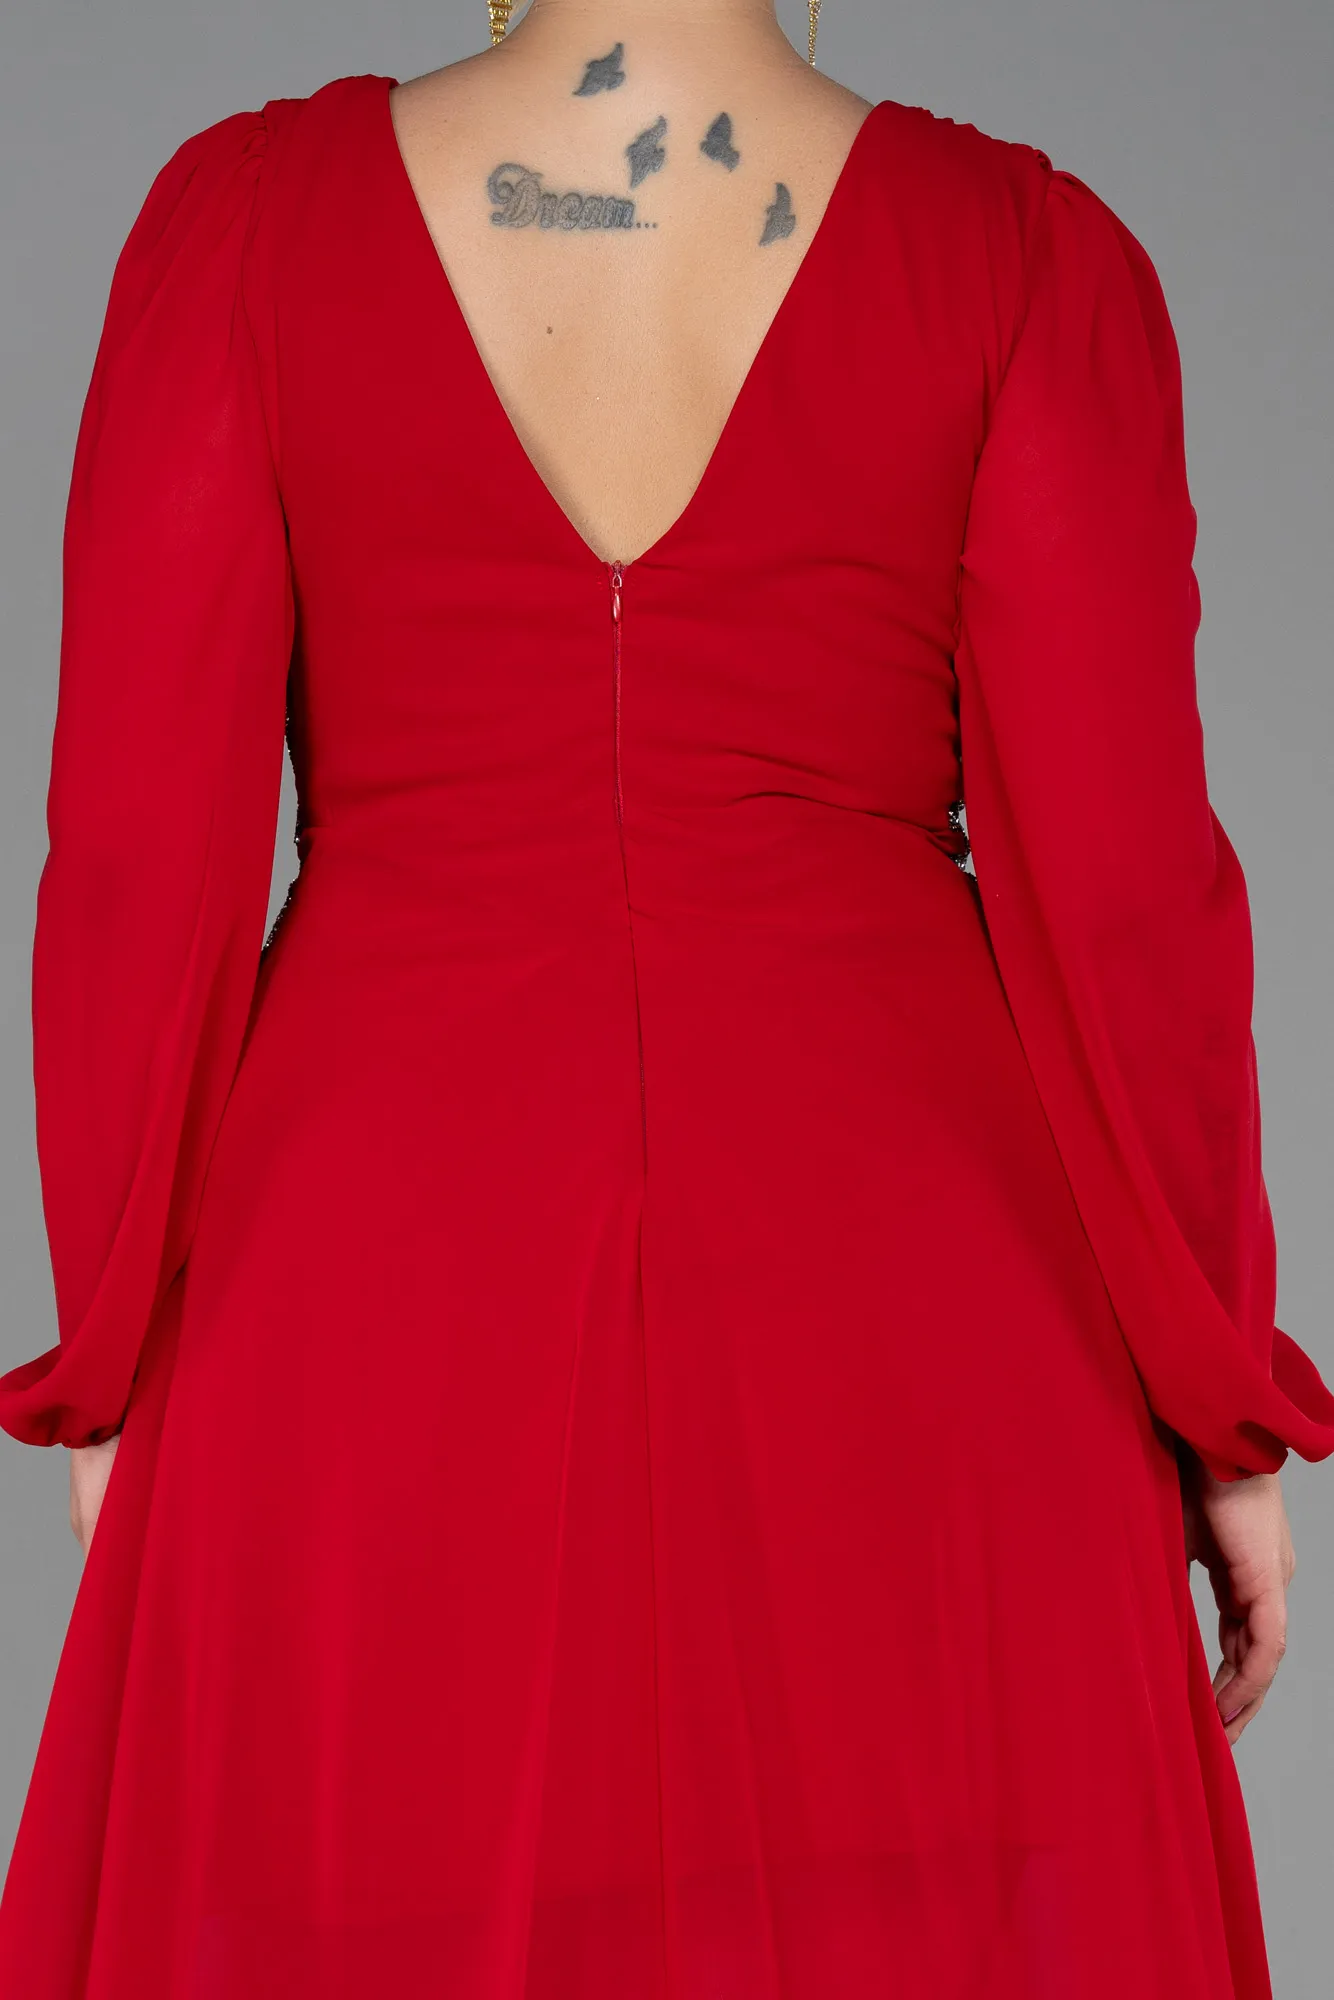 Red-Long Chiffon Plus Size Evening Dress ABU3256